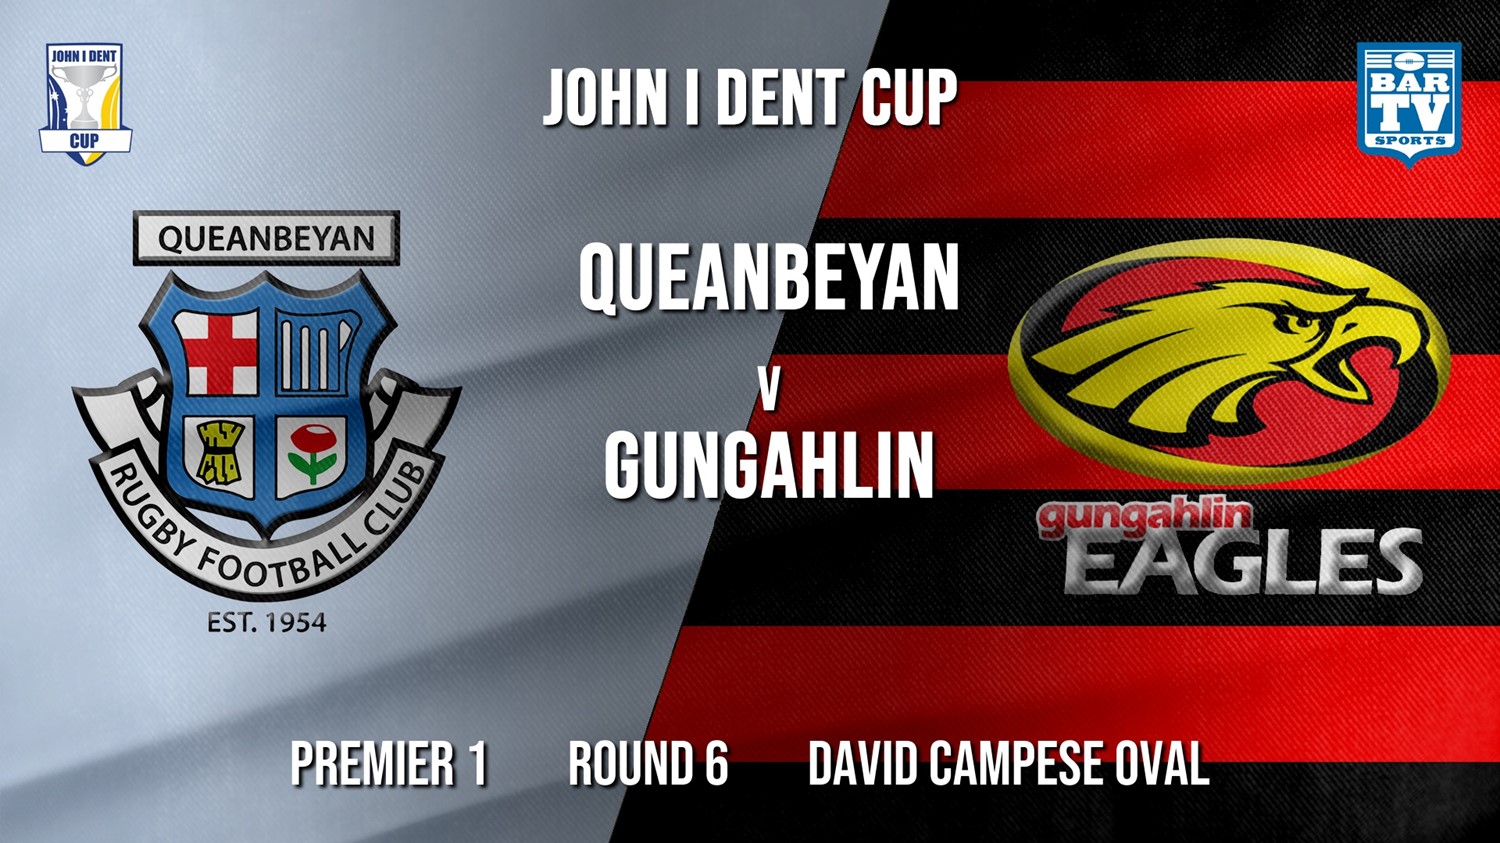 John I Dent Round 6 - Premier 1 - Queanbeyan Whites v Gungahlin Eagles Minigame Slate Image